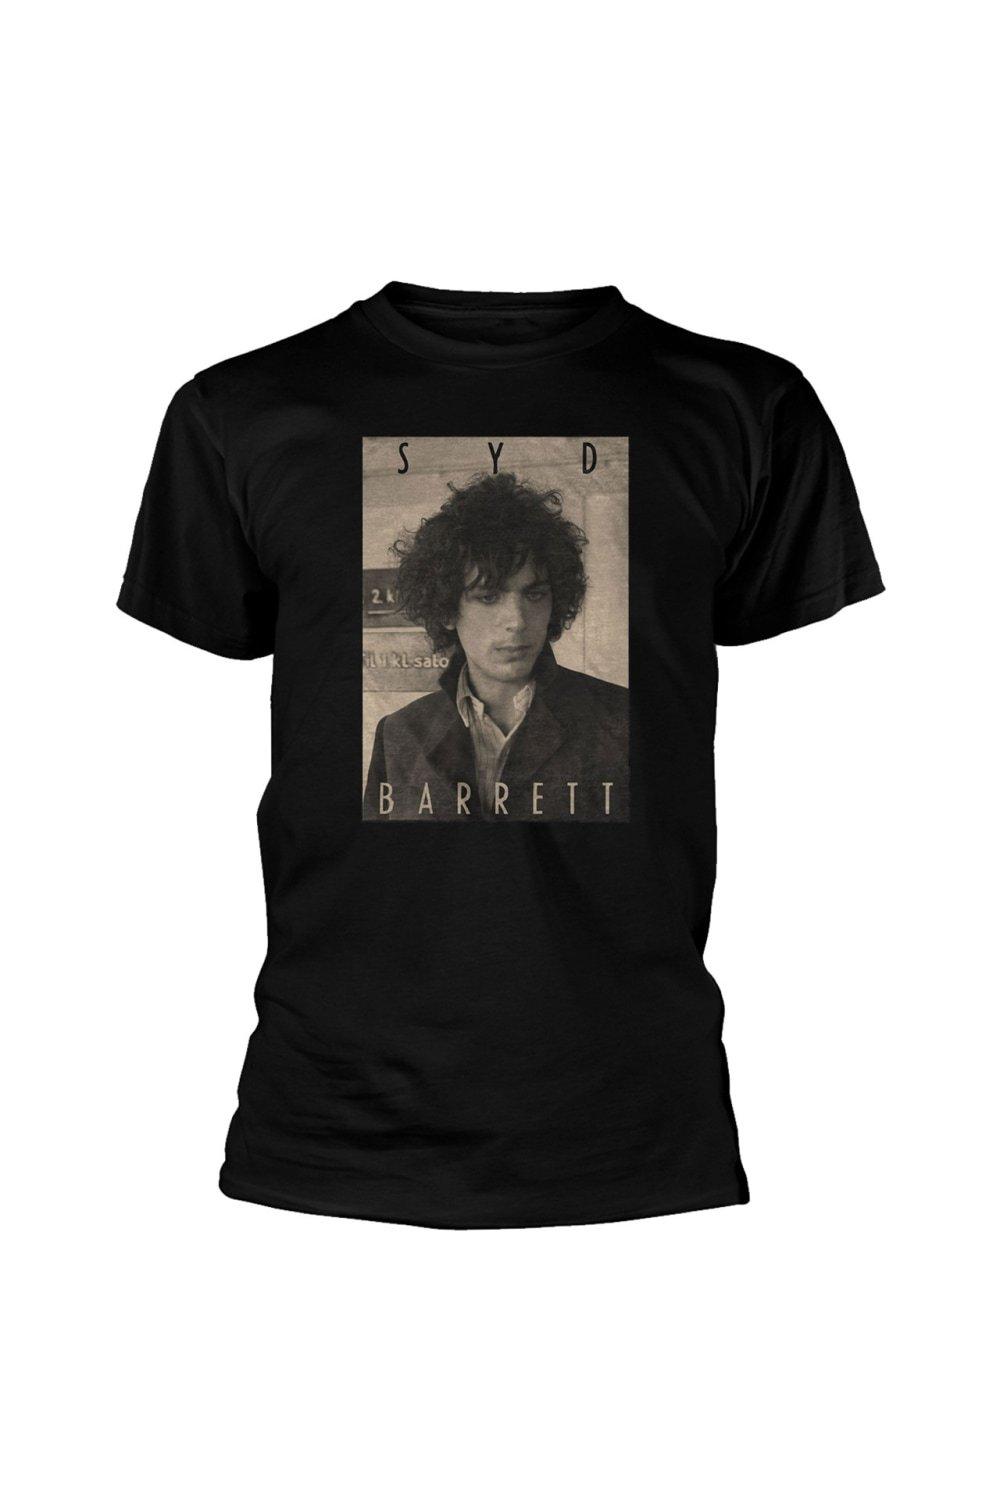 цена Хлопковая футболка сепия Syd Barrett, черный